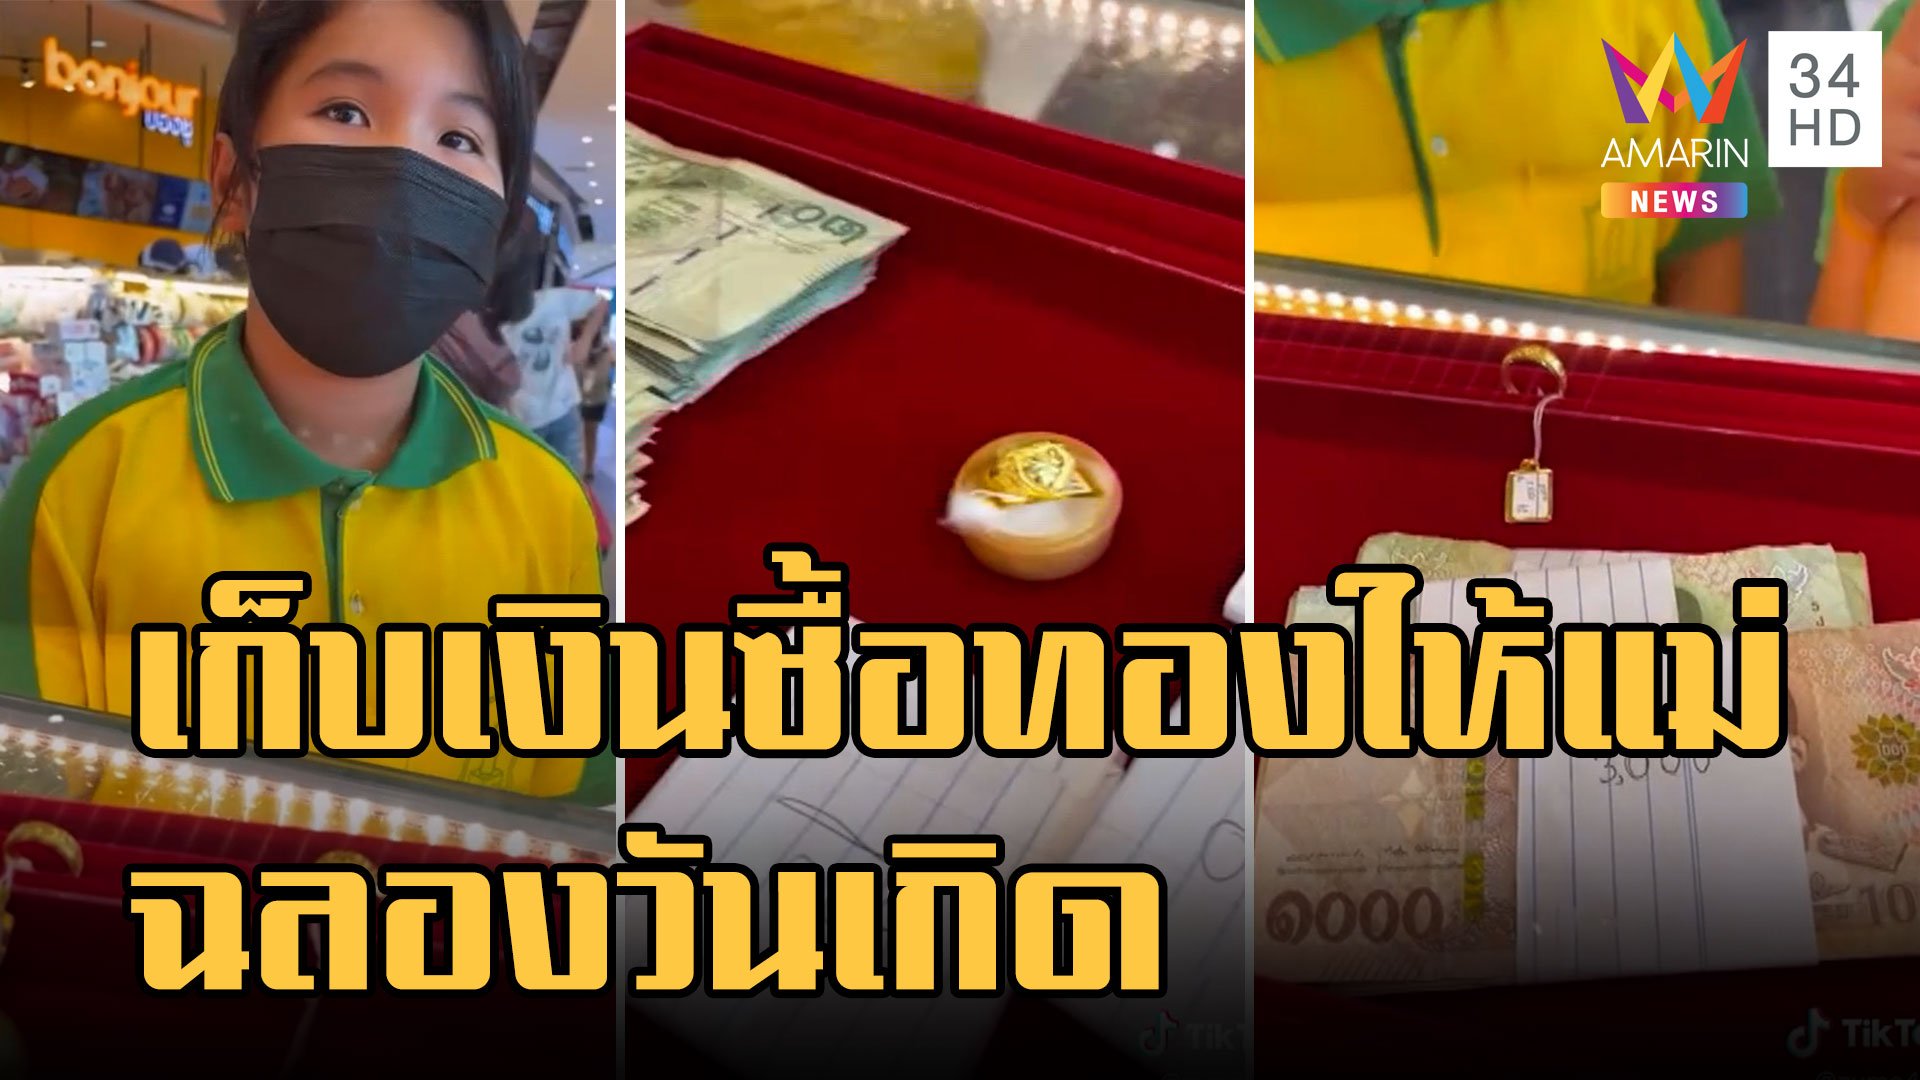 หนูน้อย ป.4 เก็บเงินซื้อทองฉลองวันเกิดให้แม่ | ข่าวอรุณอมรินทร์ | 9 พ.ย. 65 | AMARIN TVHD34